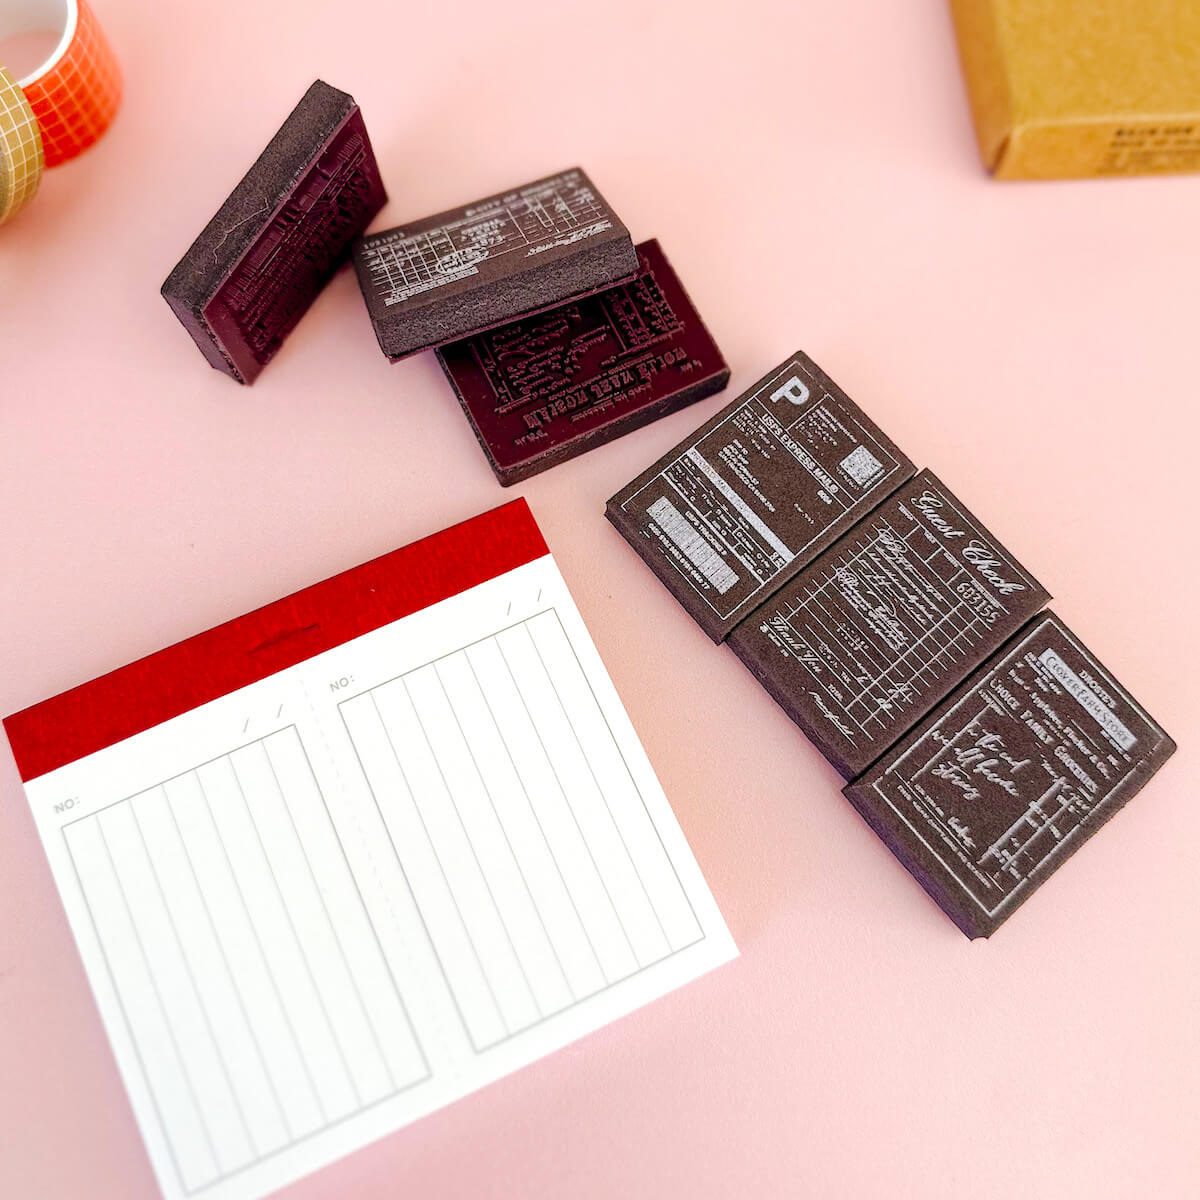 Foam stamp kit with paper pad - Vintage memos